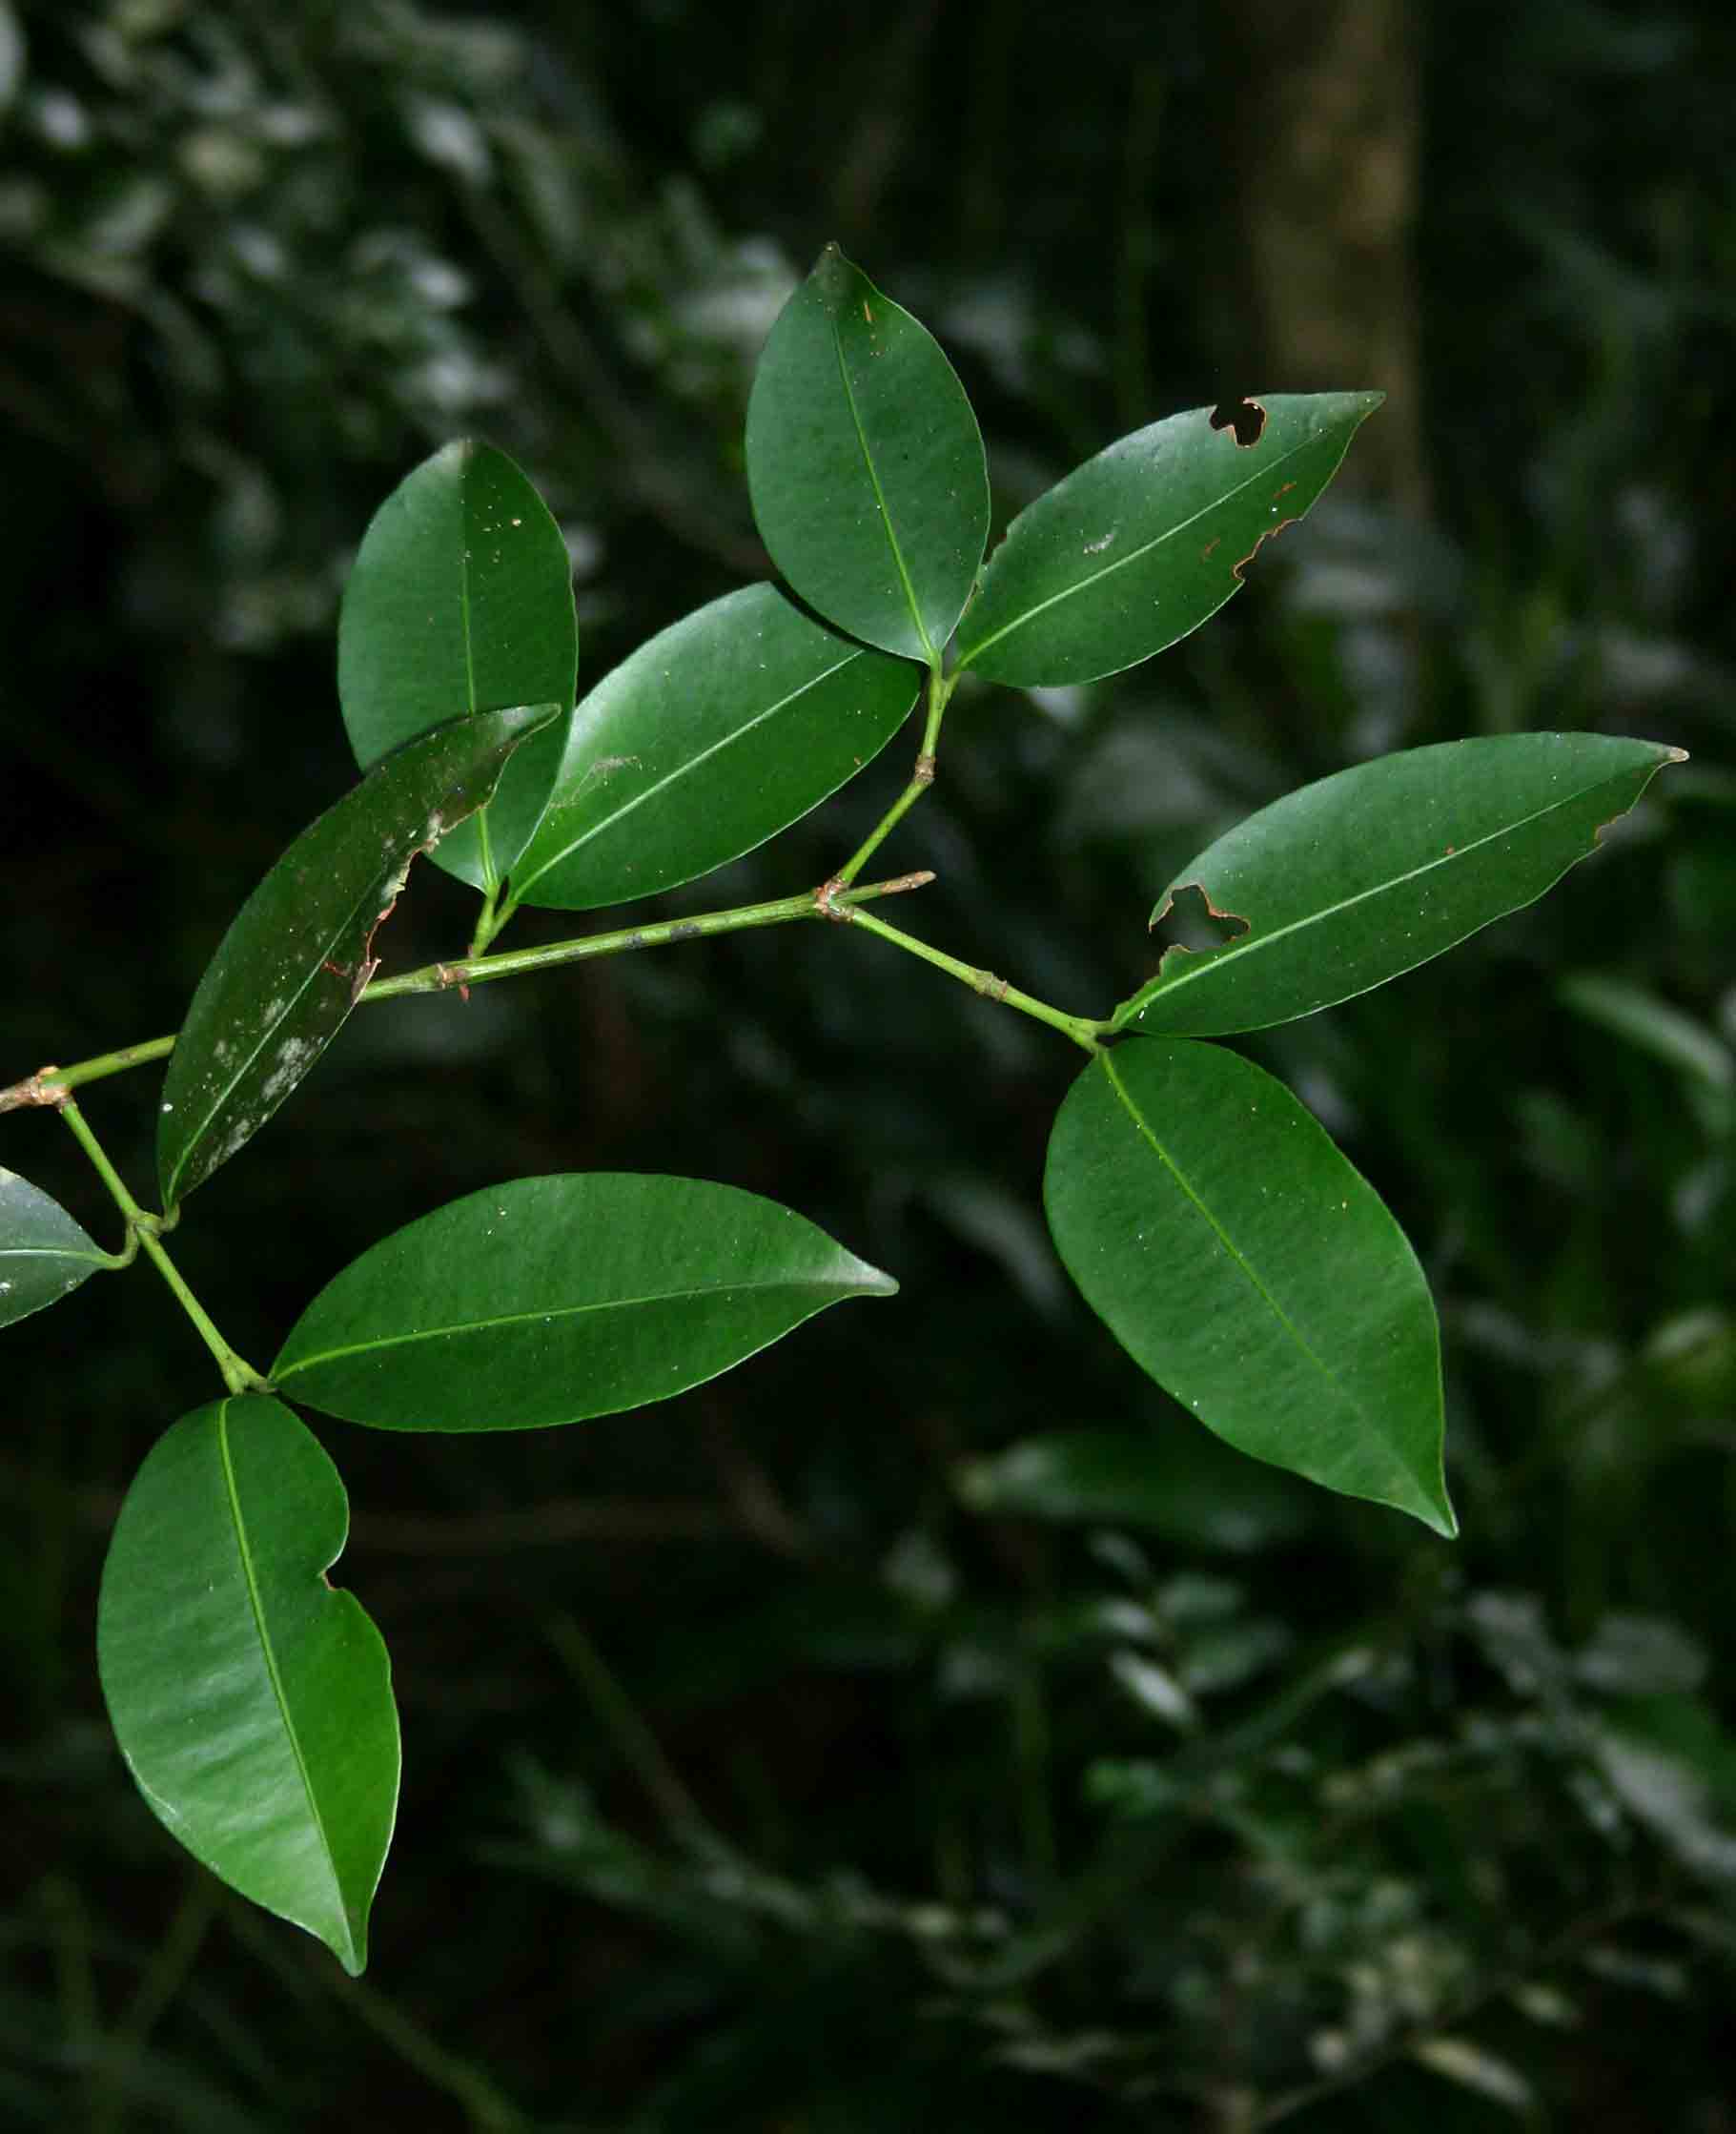 Garcinia kingaensis